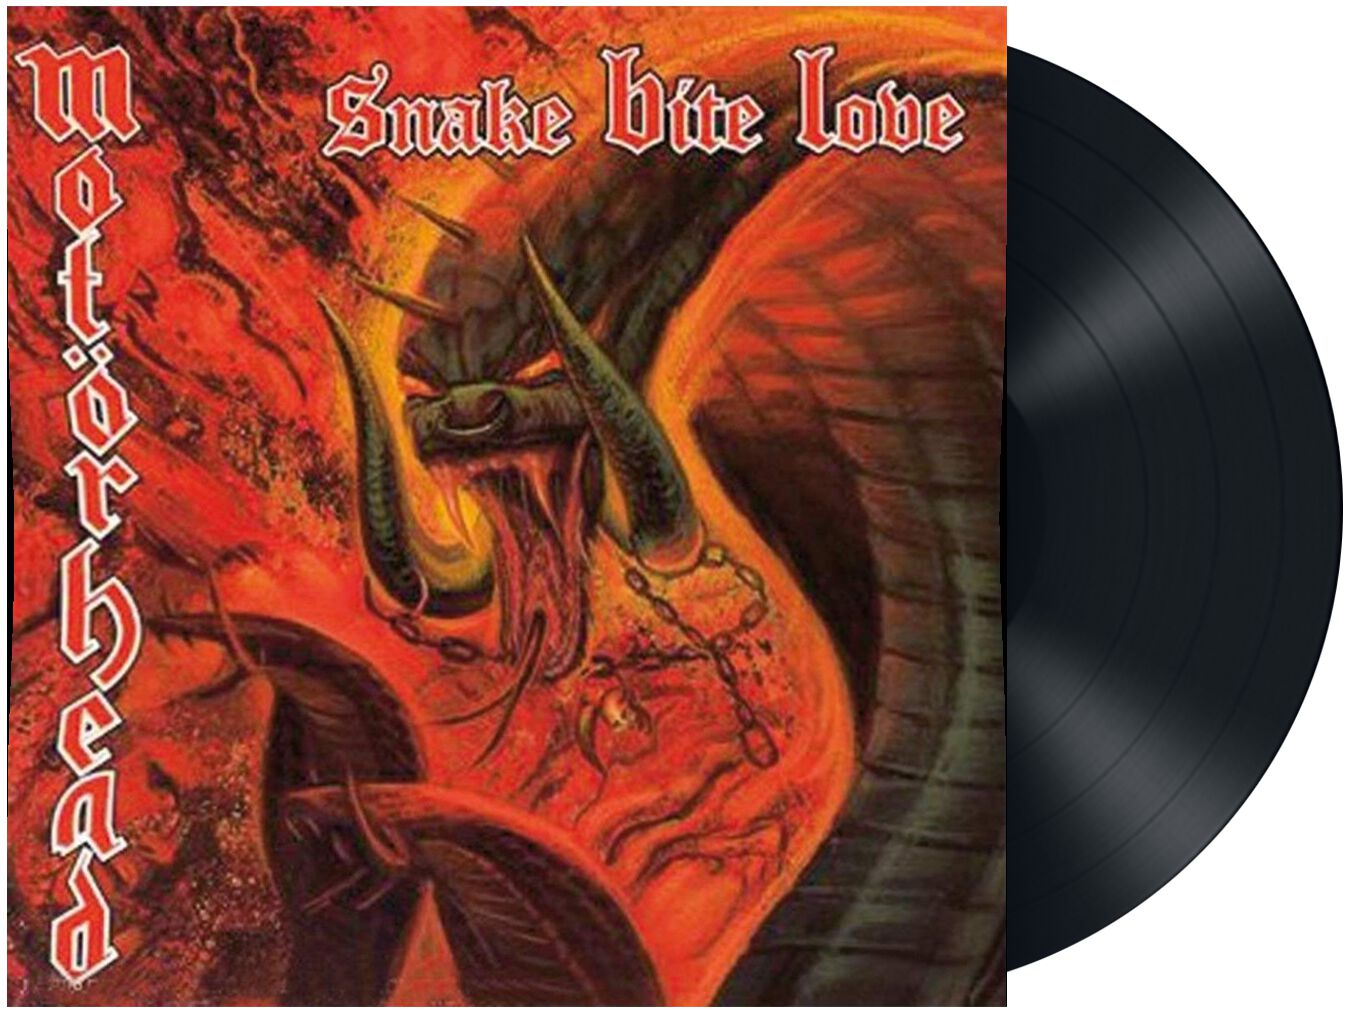 Snake bite love von Motörhead - LP (Re-Release, Standard)